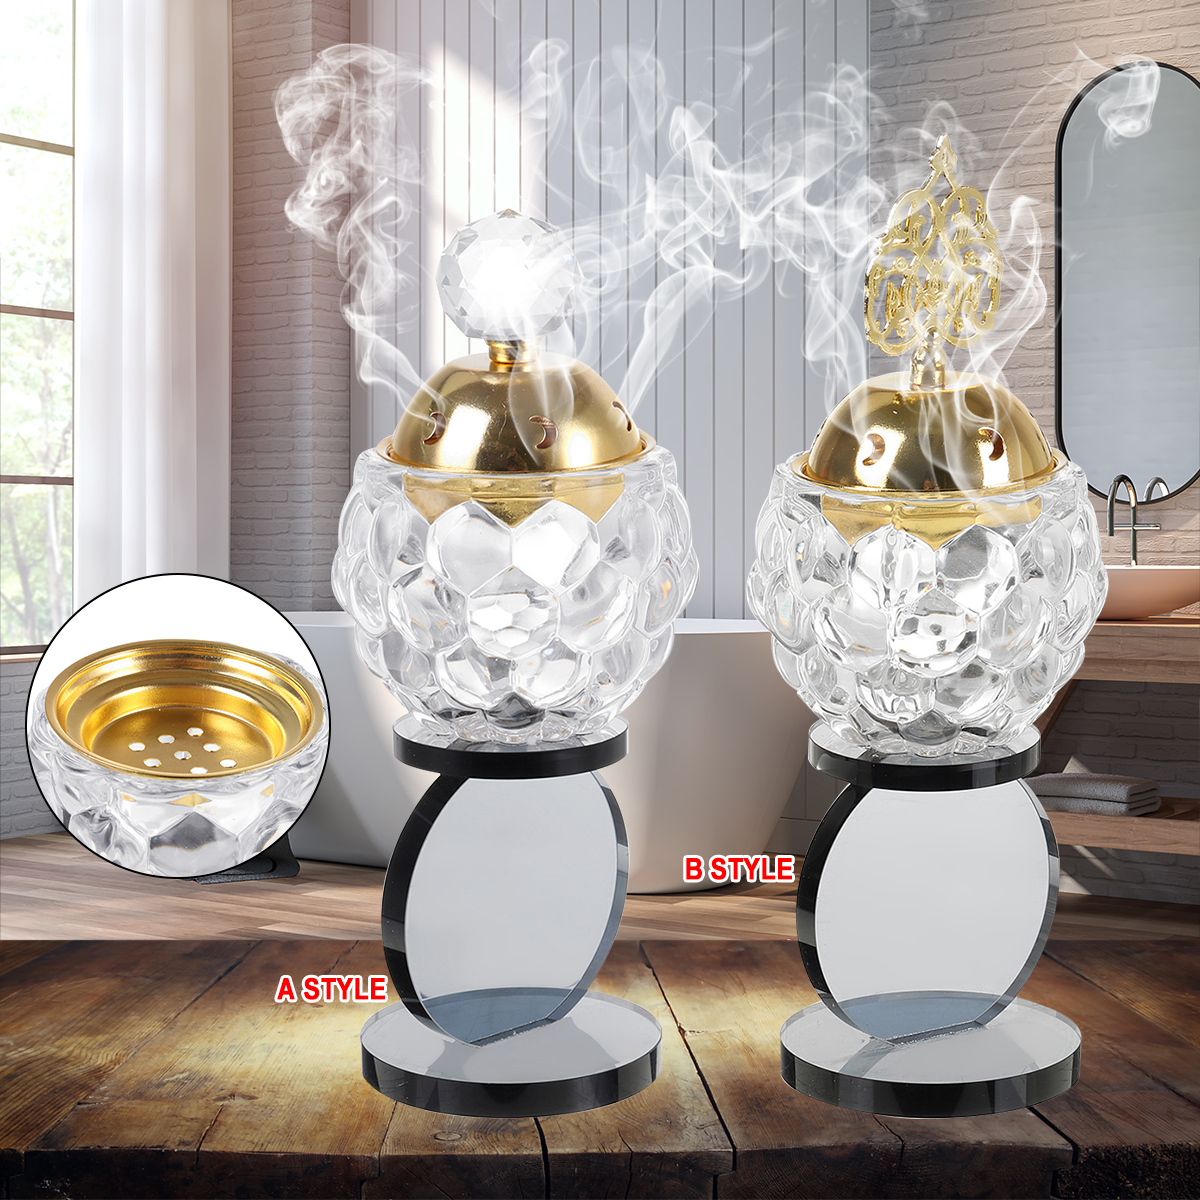 Crystal Incense Burner Plating Metal Polishing Incense Burner Traditional For Home Office Desktop Decorative Ornaments